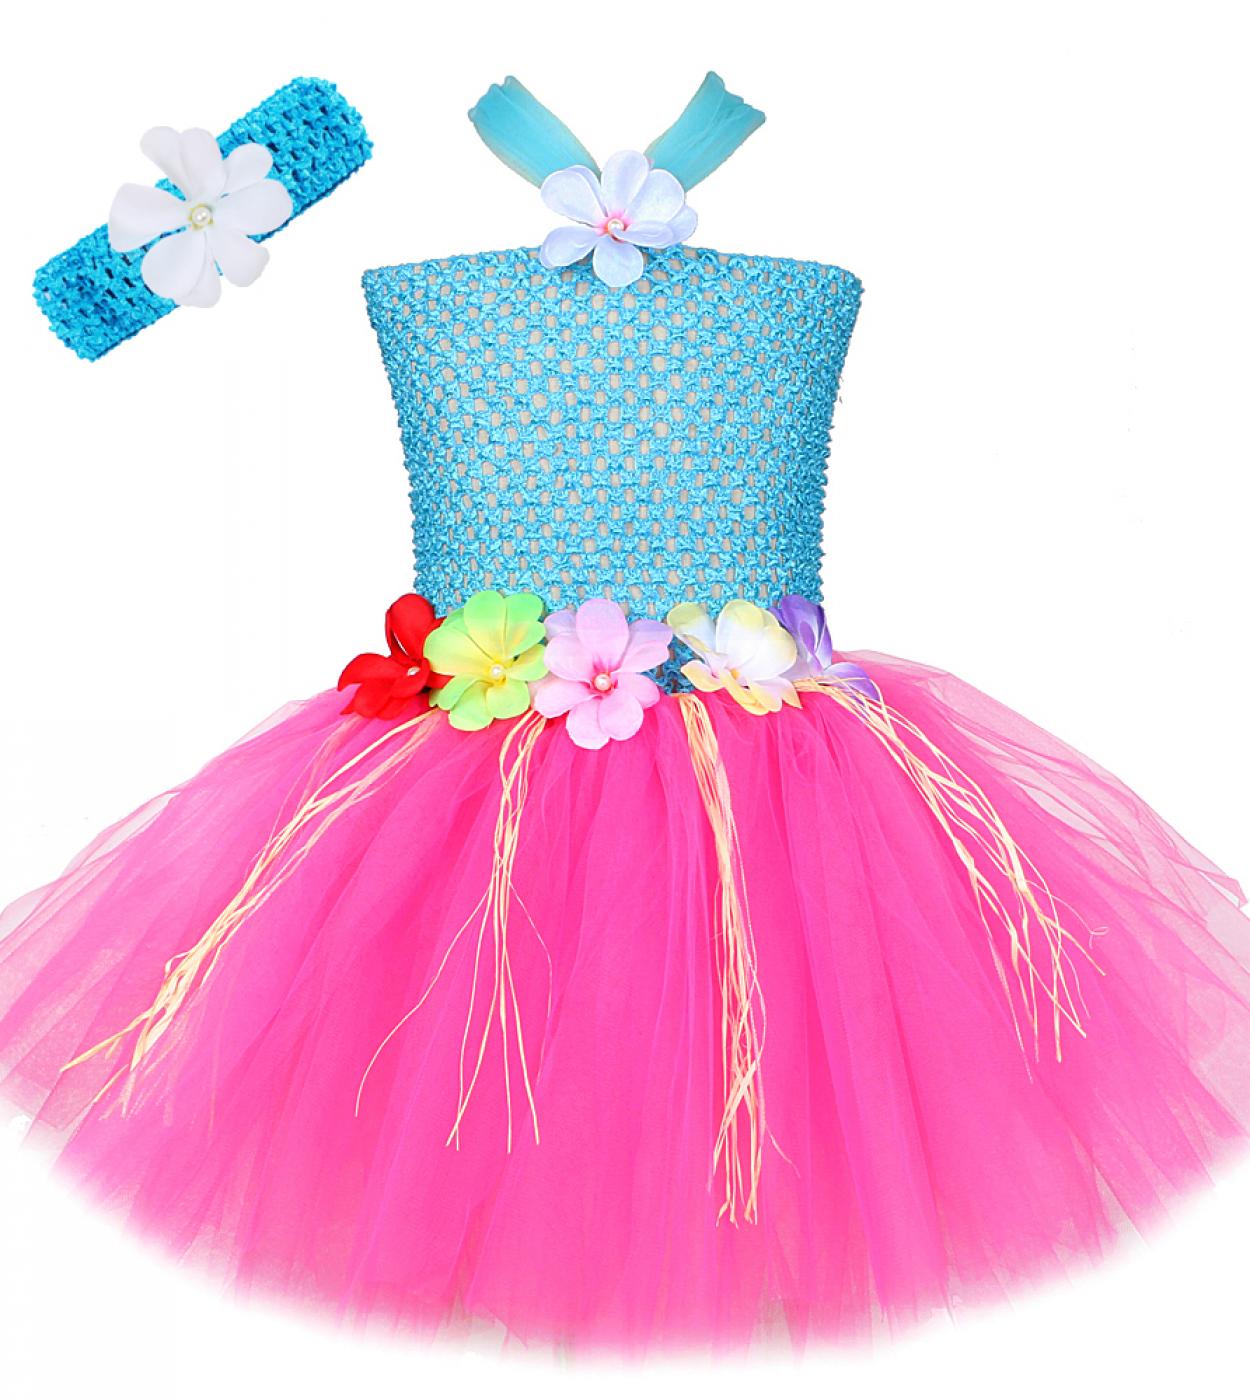 לואו הוואי גראס שמלת טוטו לילדות הולה מסיבת יום הולדת תלבושת ילדים ילדה תחפושות ליל כל הקדושים פרח נסיכה ריקוד ד